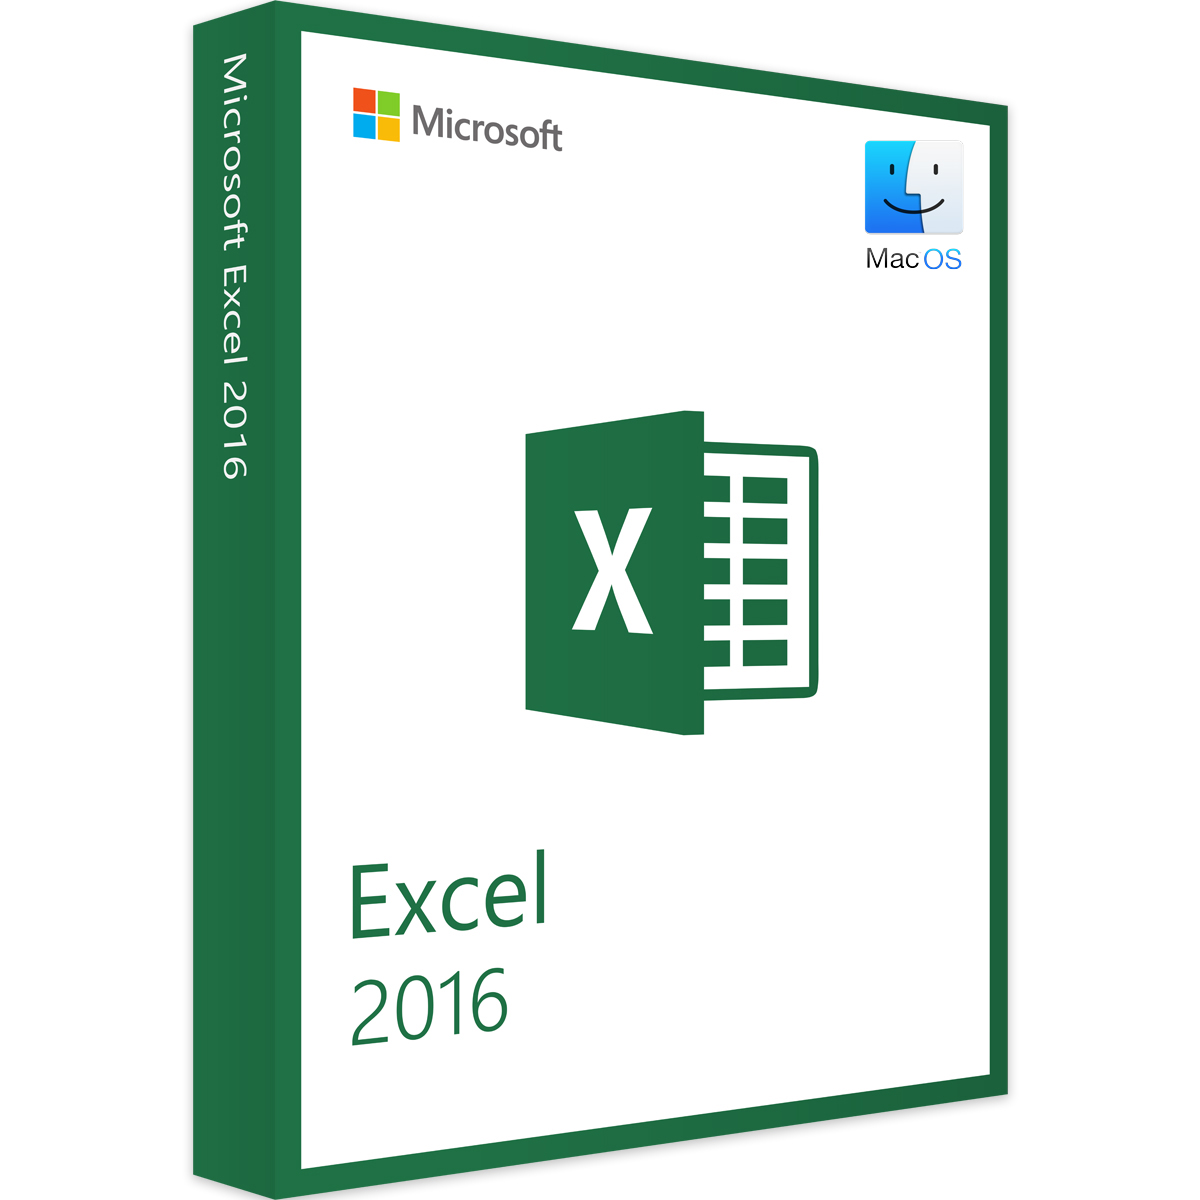 Microsoft Excel 2016 kaufen für Unternehmen